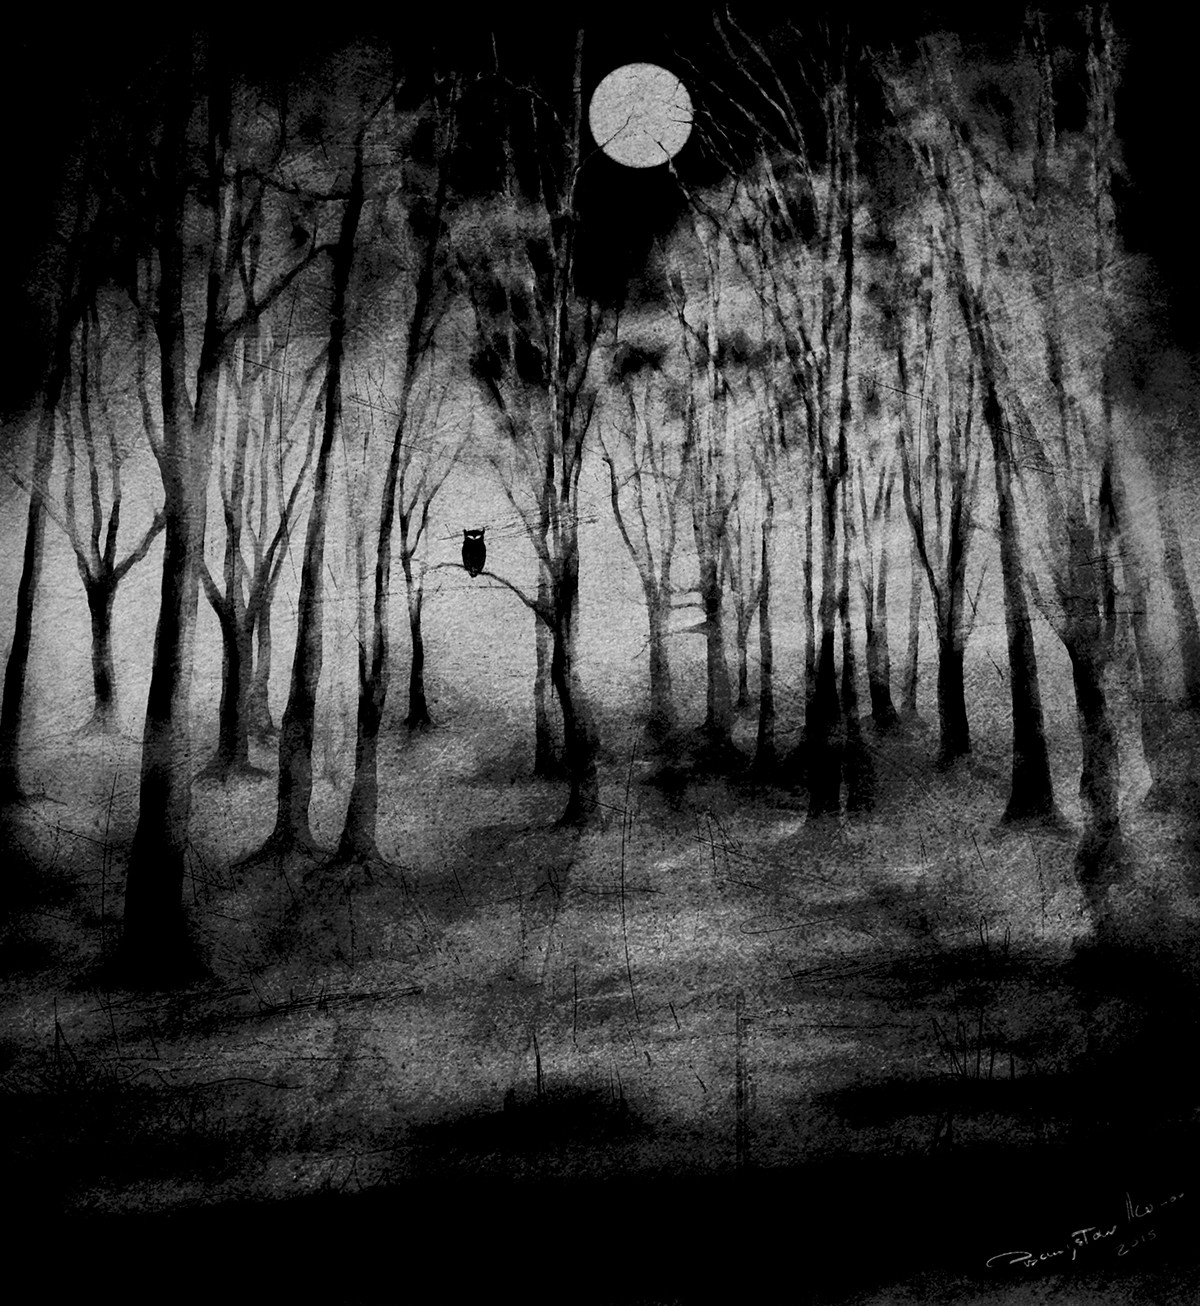 movie twin peaks owl David Lynch trees fog mystery Eire horror night moon woodland wood forest